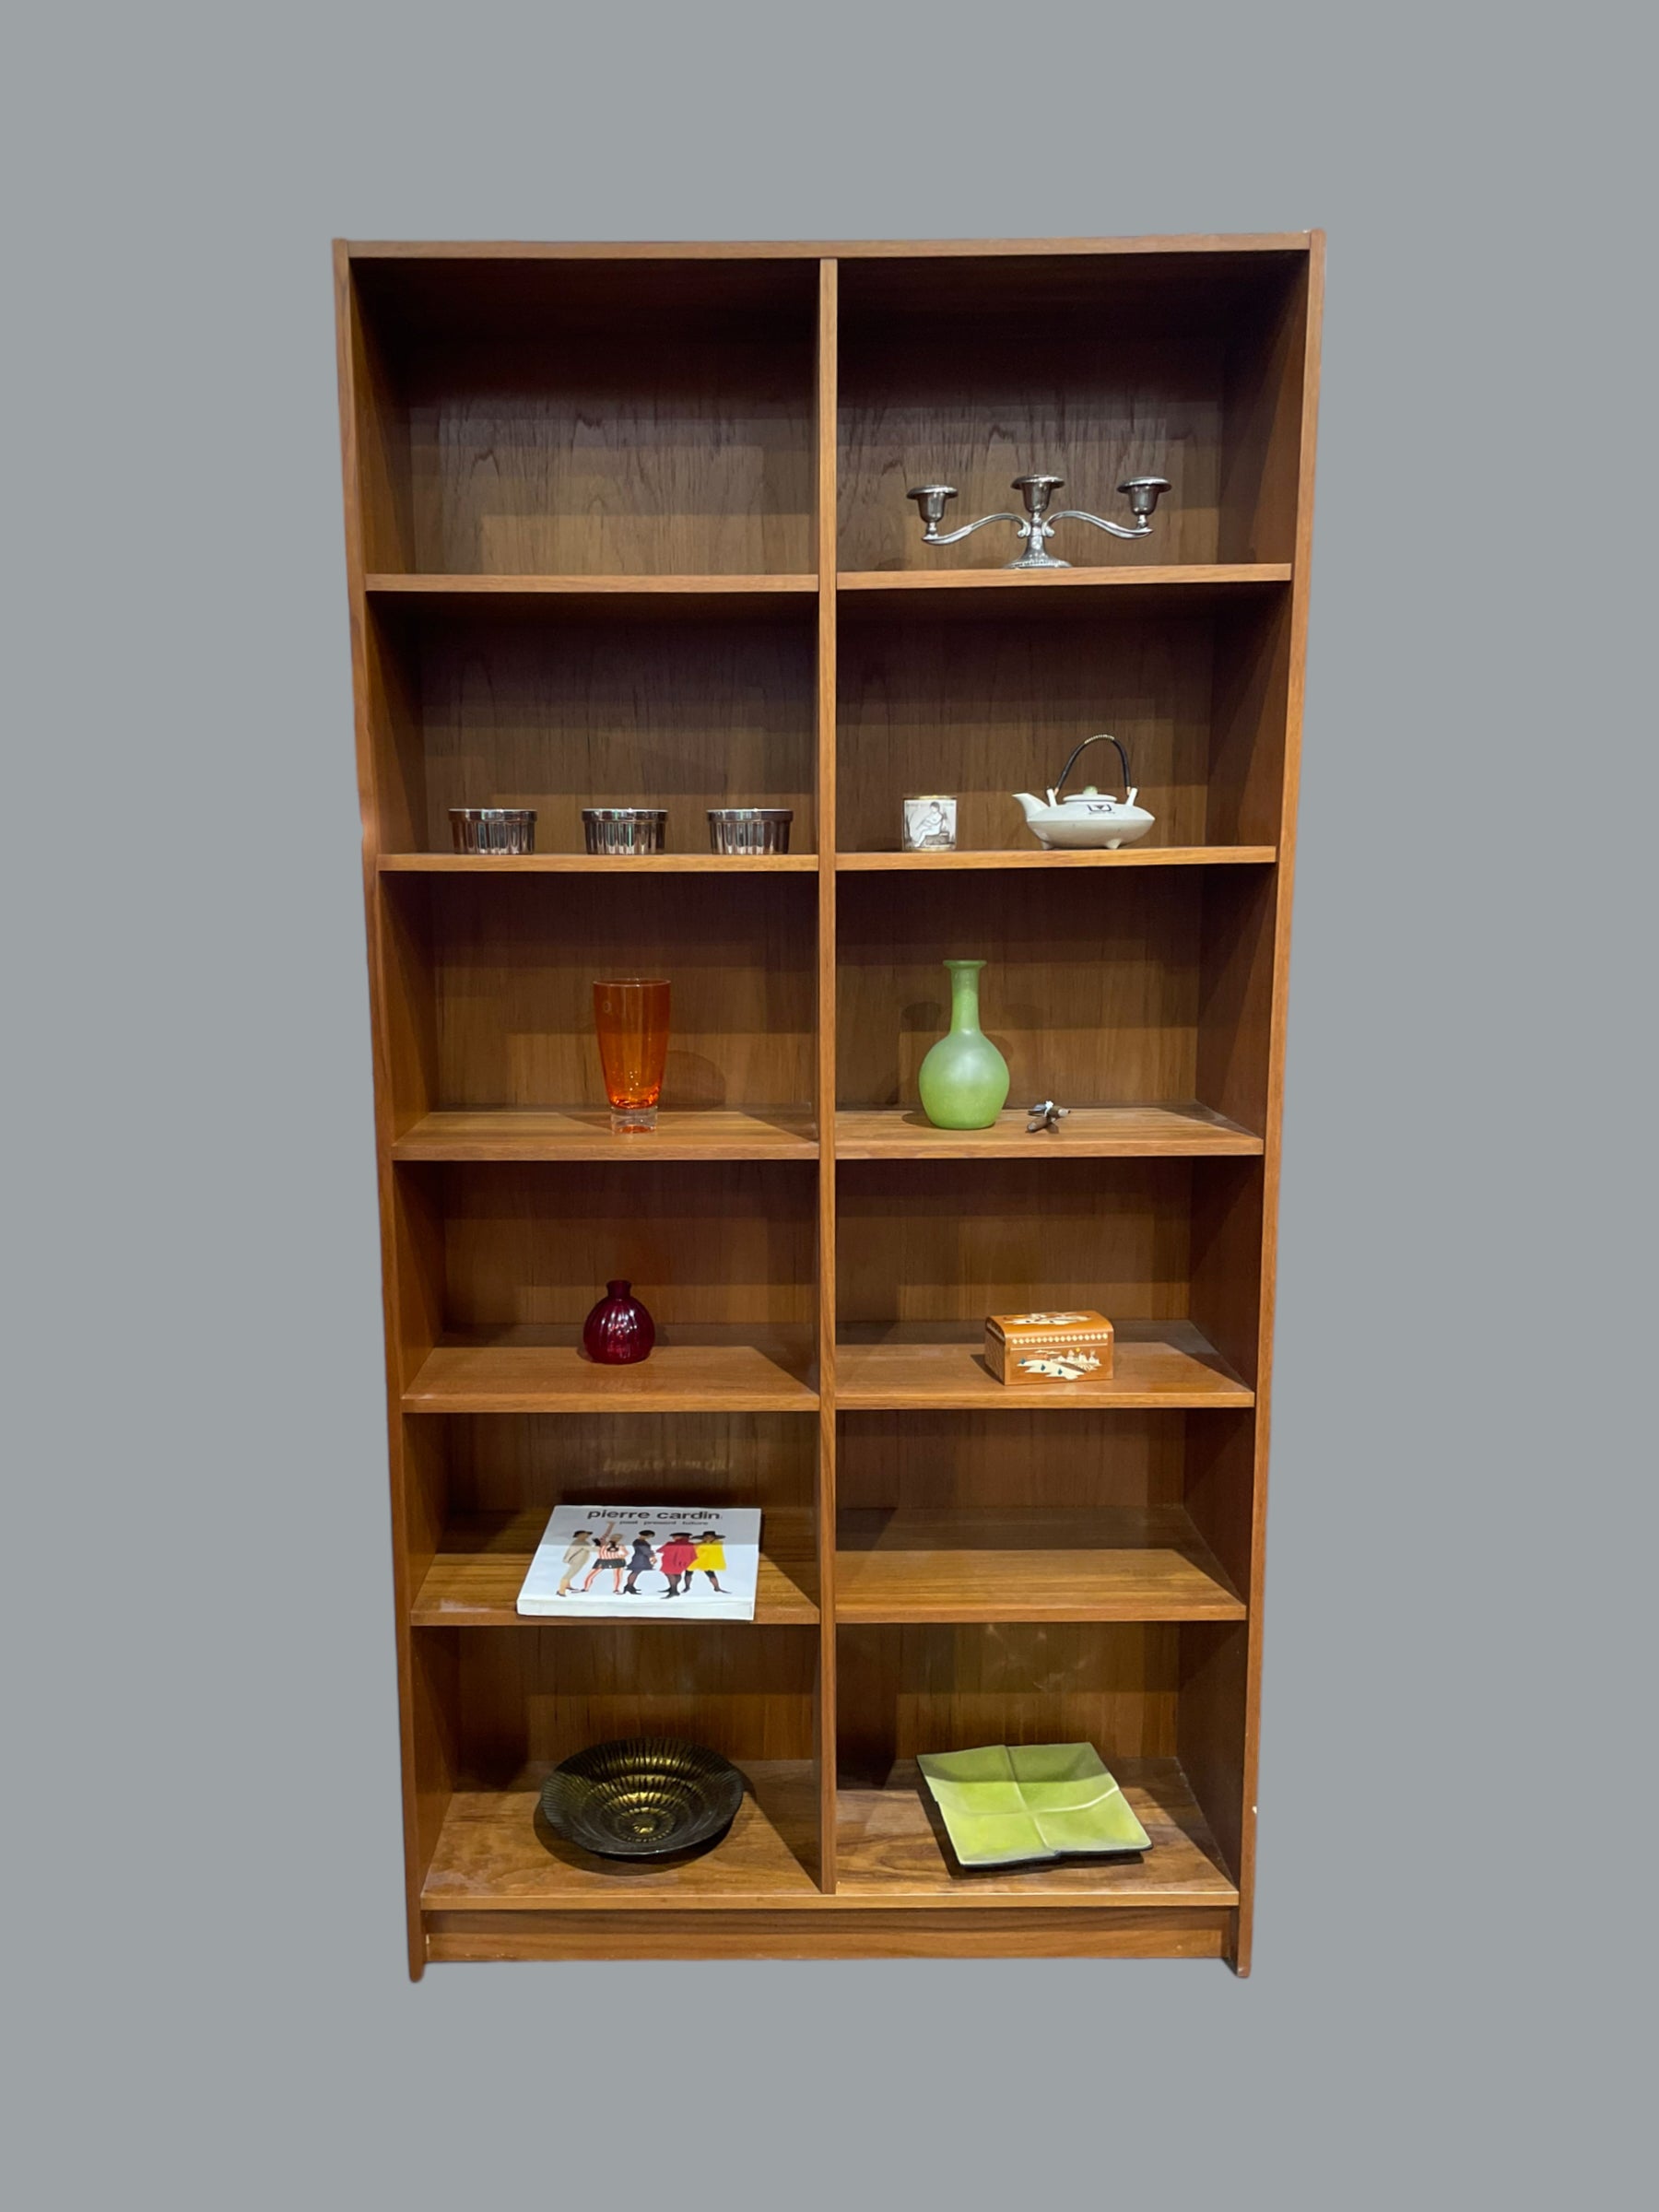 Vintage Mid-Century Modern Bookshelf - Made in Denmark